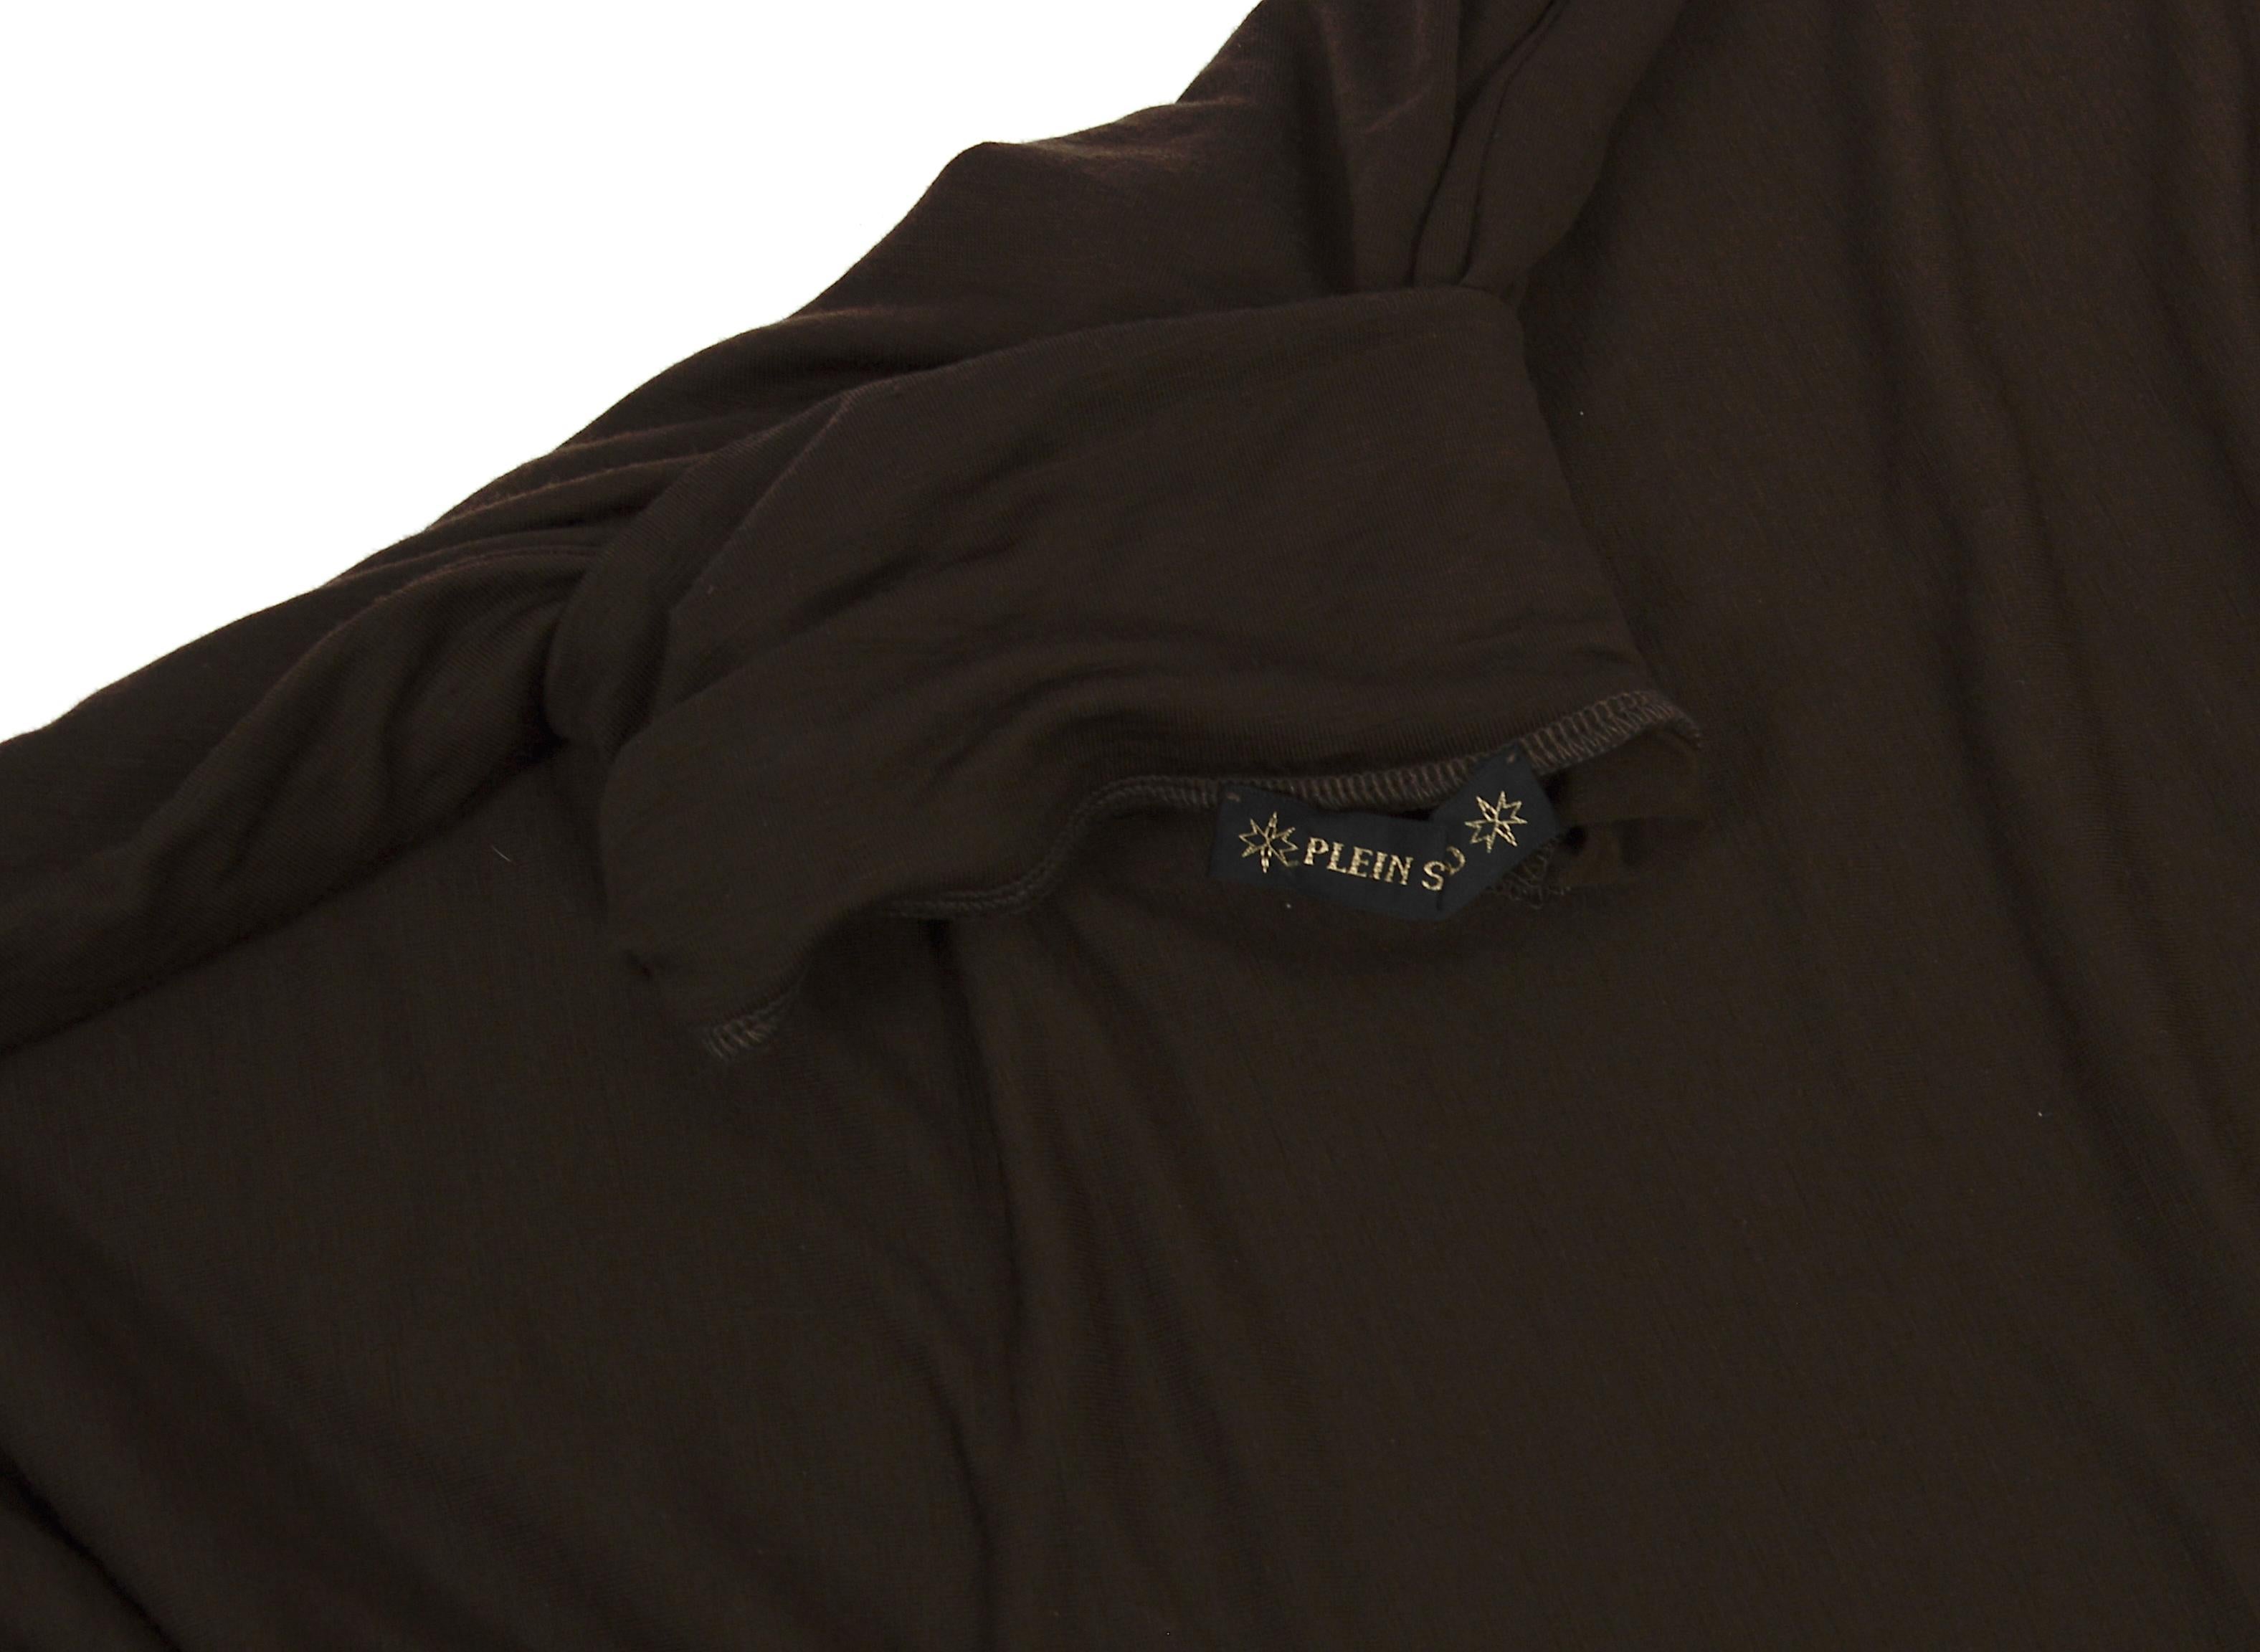 Plein Sud vintage 1990s long brown wool & elastane batwing sleeves dress For Sale 8